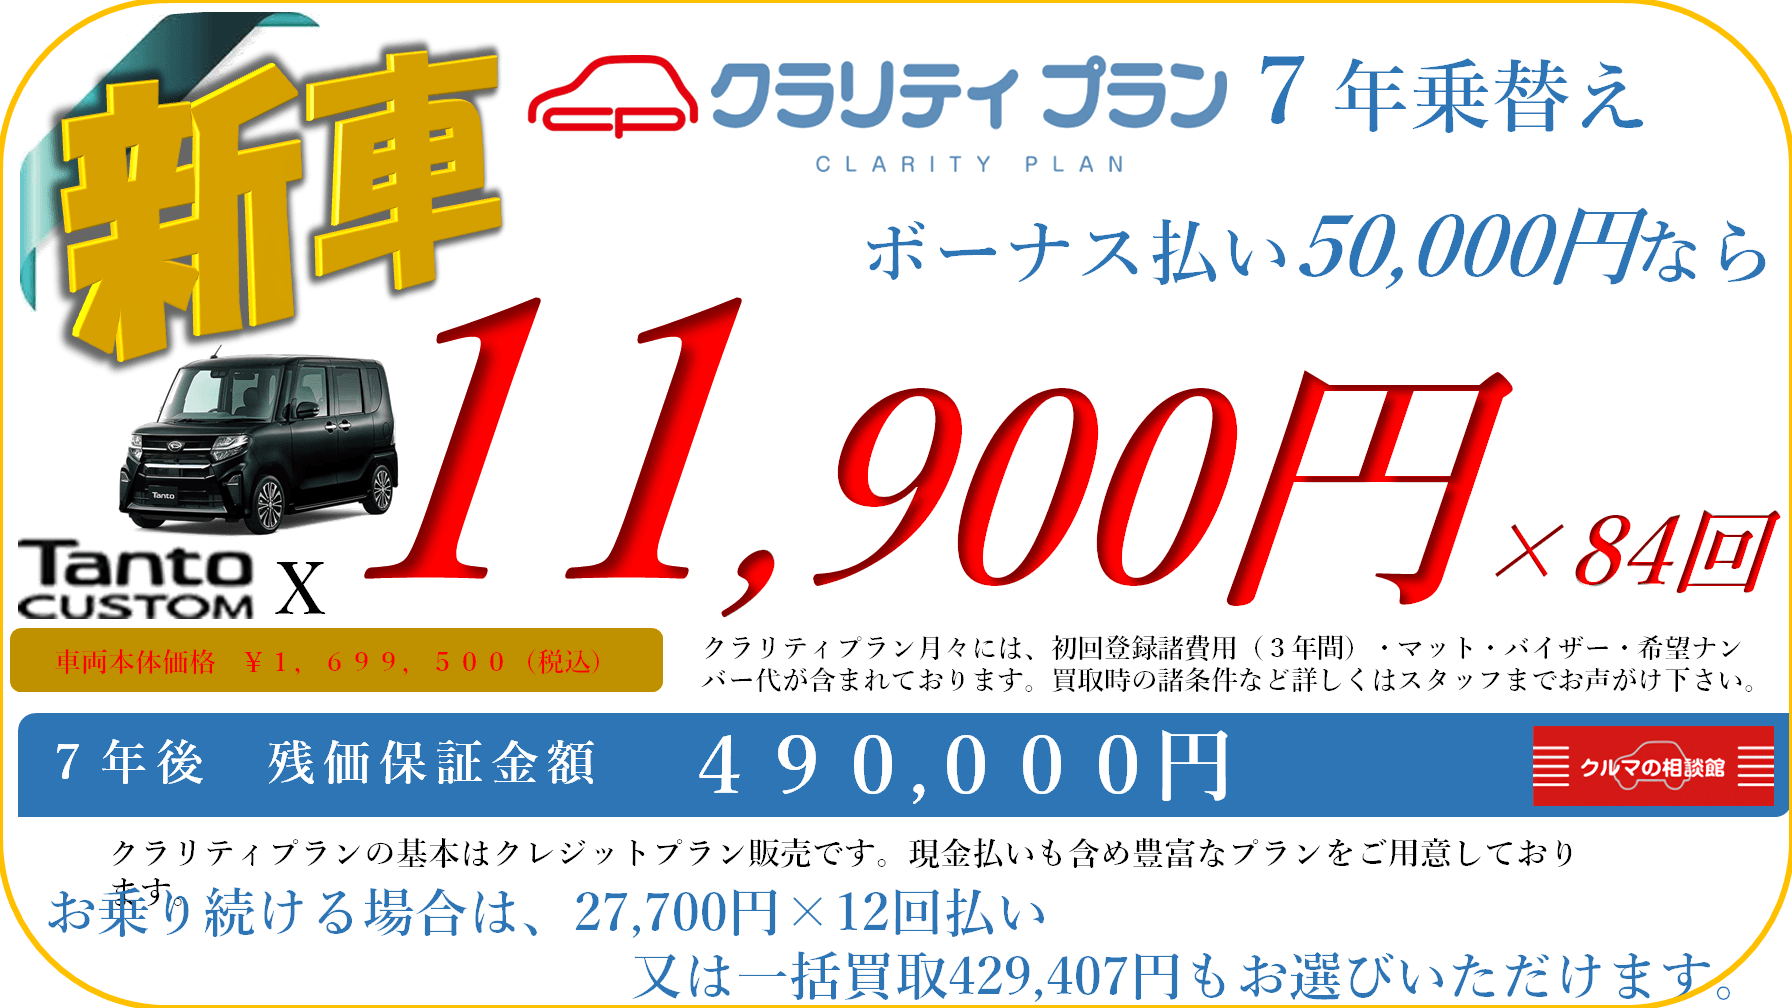 新車 Tanto CUSTOM X クラリティプラン7年乗替え ボーナス払い50,000円なら月々11,900円×84回